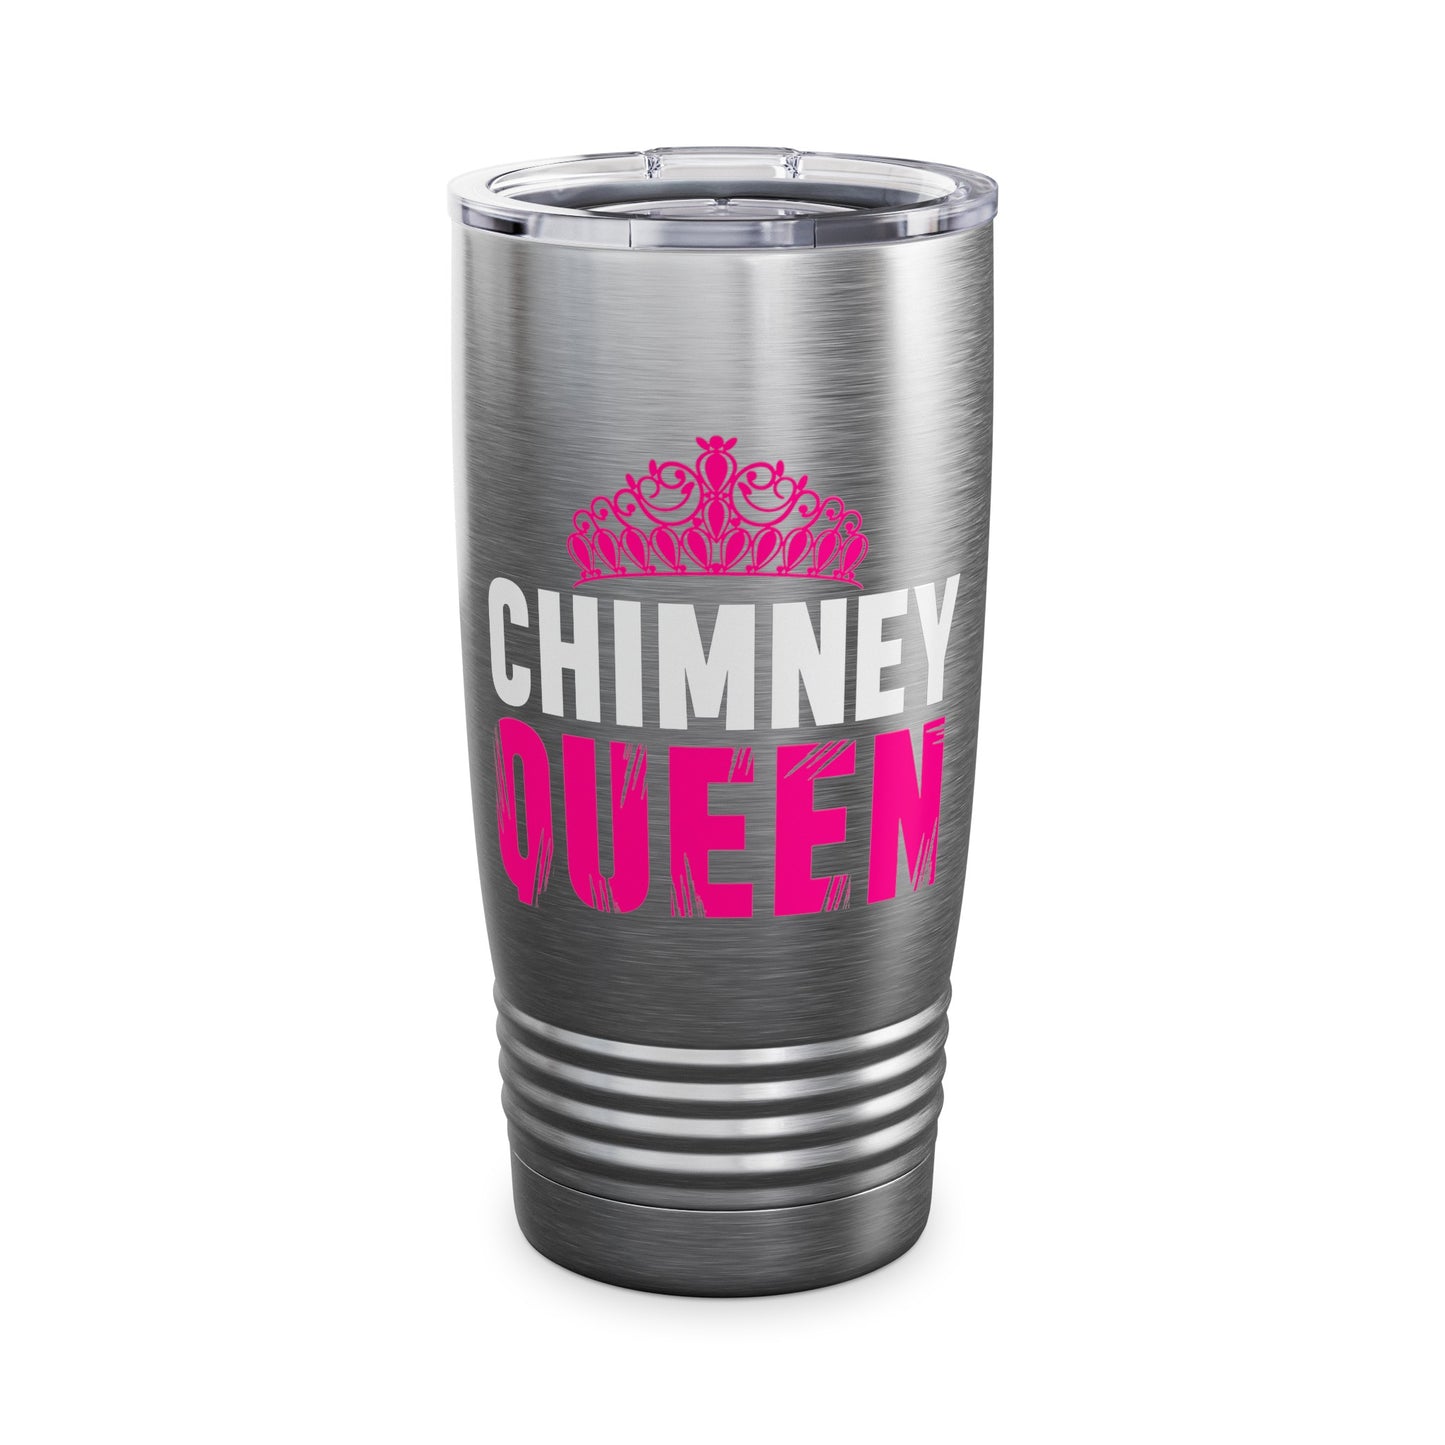 Chimney Queen Tumbler